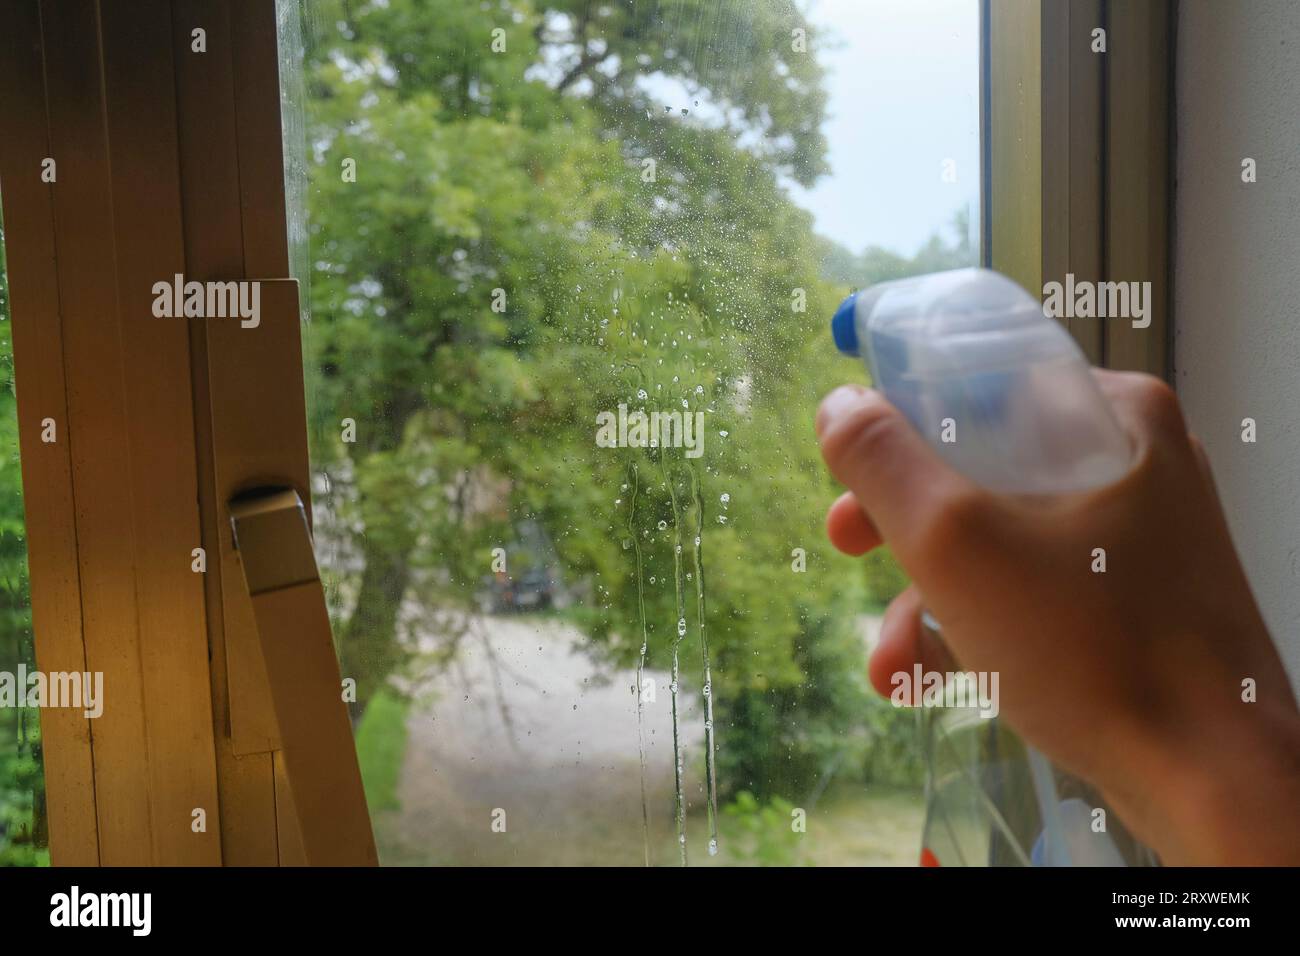 Reinigung des Fensters mit einem Scheibenreinigungsspray. Hand hält einen Sprühnebel über das Fenster. Reinigungsservice Stockfoto